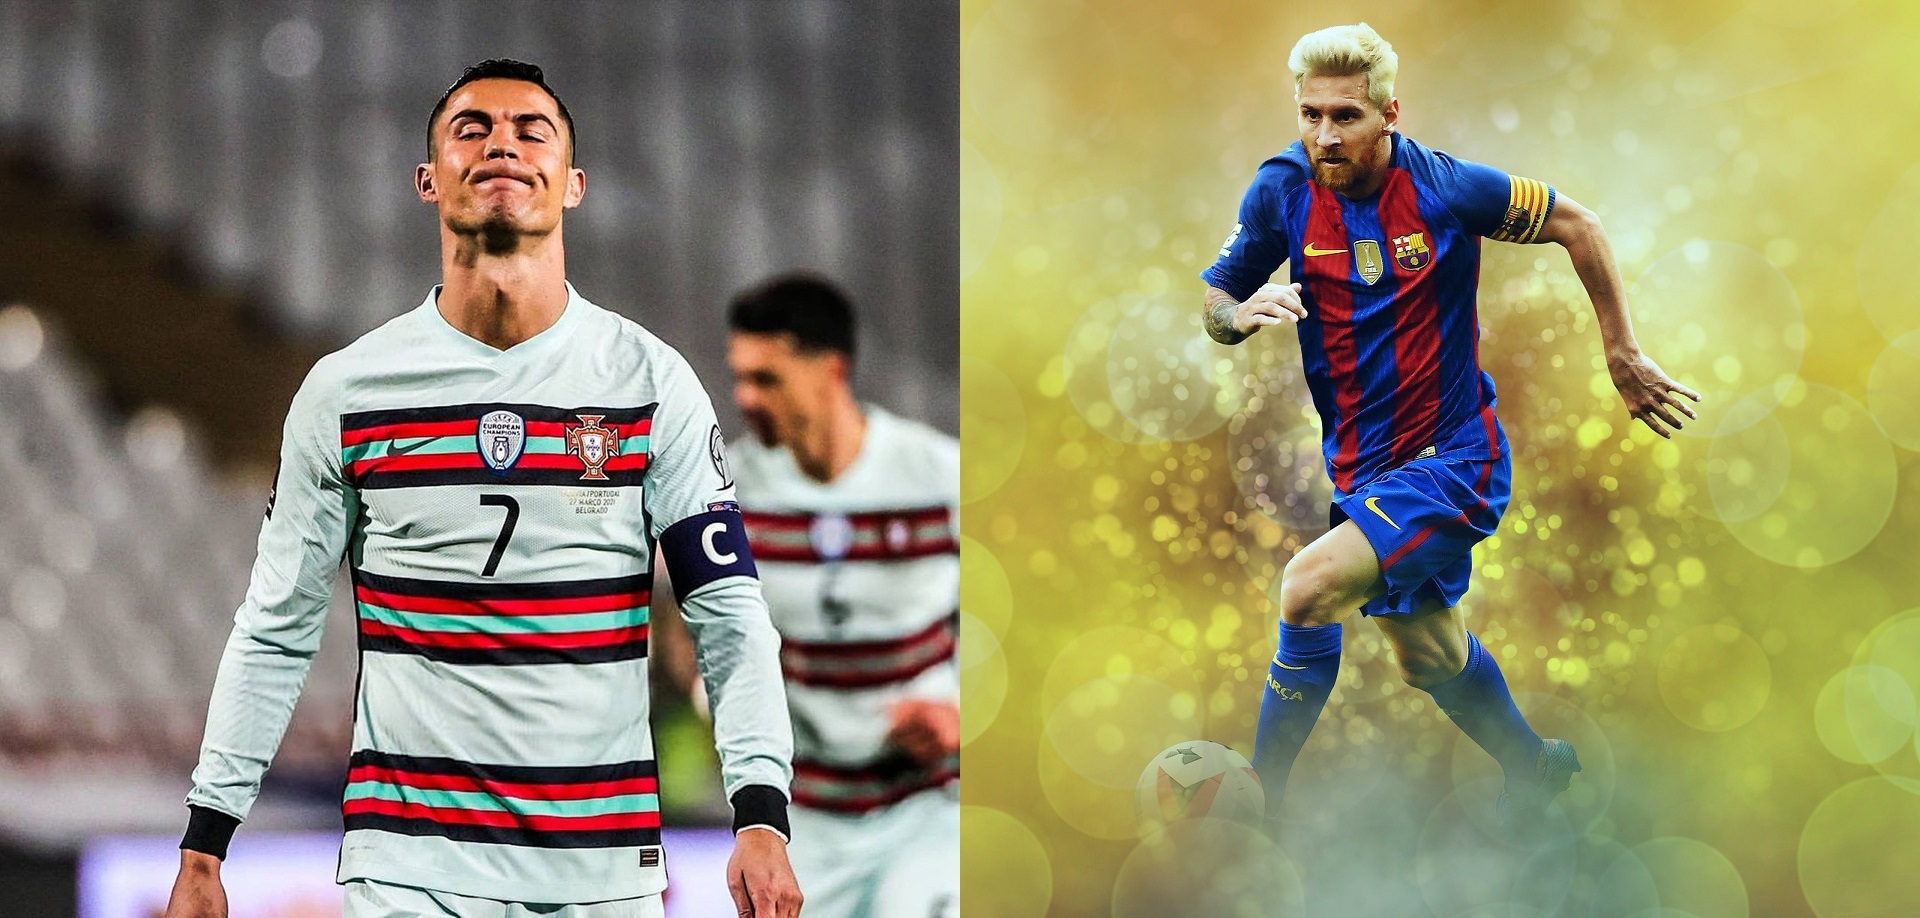 Ronaldo vs Messi : qui est le meilleur joueur ?, Ronaldo ou Messi, Cristiano Ronaldo vs Lionel Messi, comparatif Messi Ronaldo